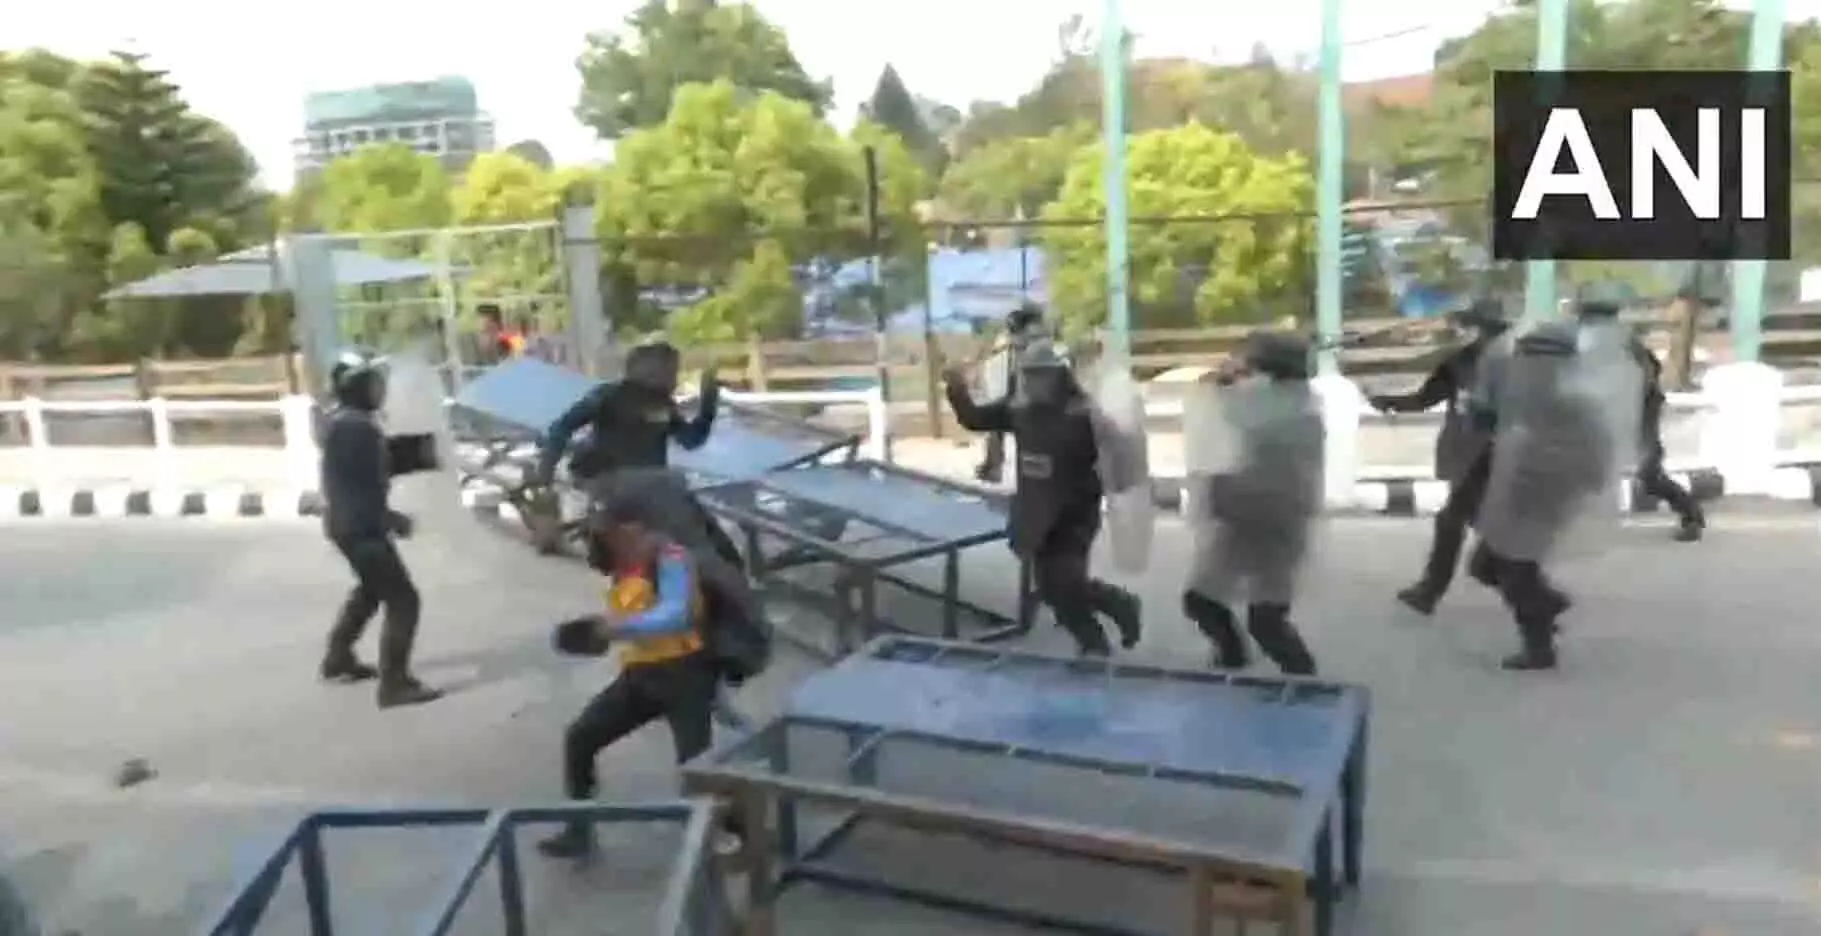 काठमांडू में राष्ट्रीय मुक्ति आंदोलन के सदस्यों पर पुलिस ने किया लाठीचार्ज, देखें VIDEO...